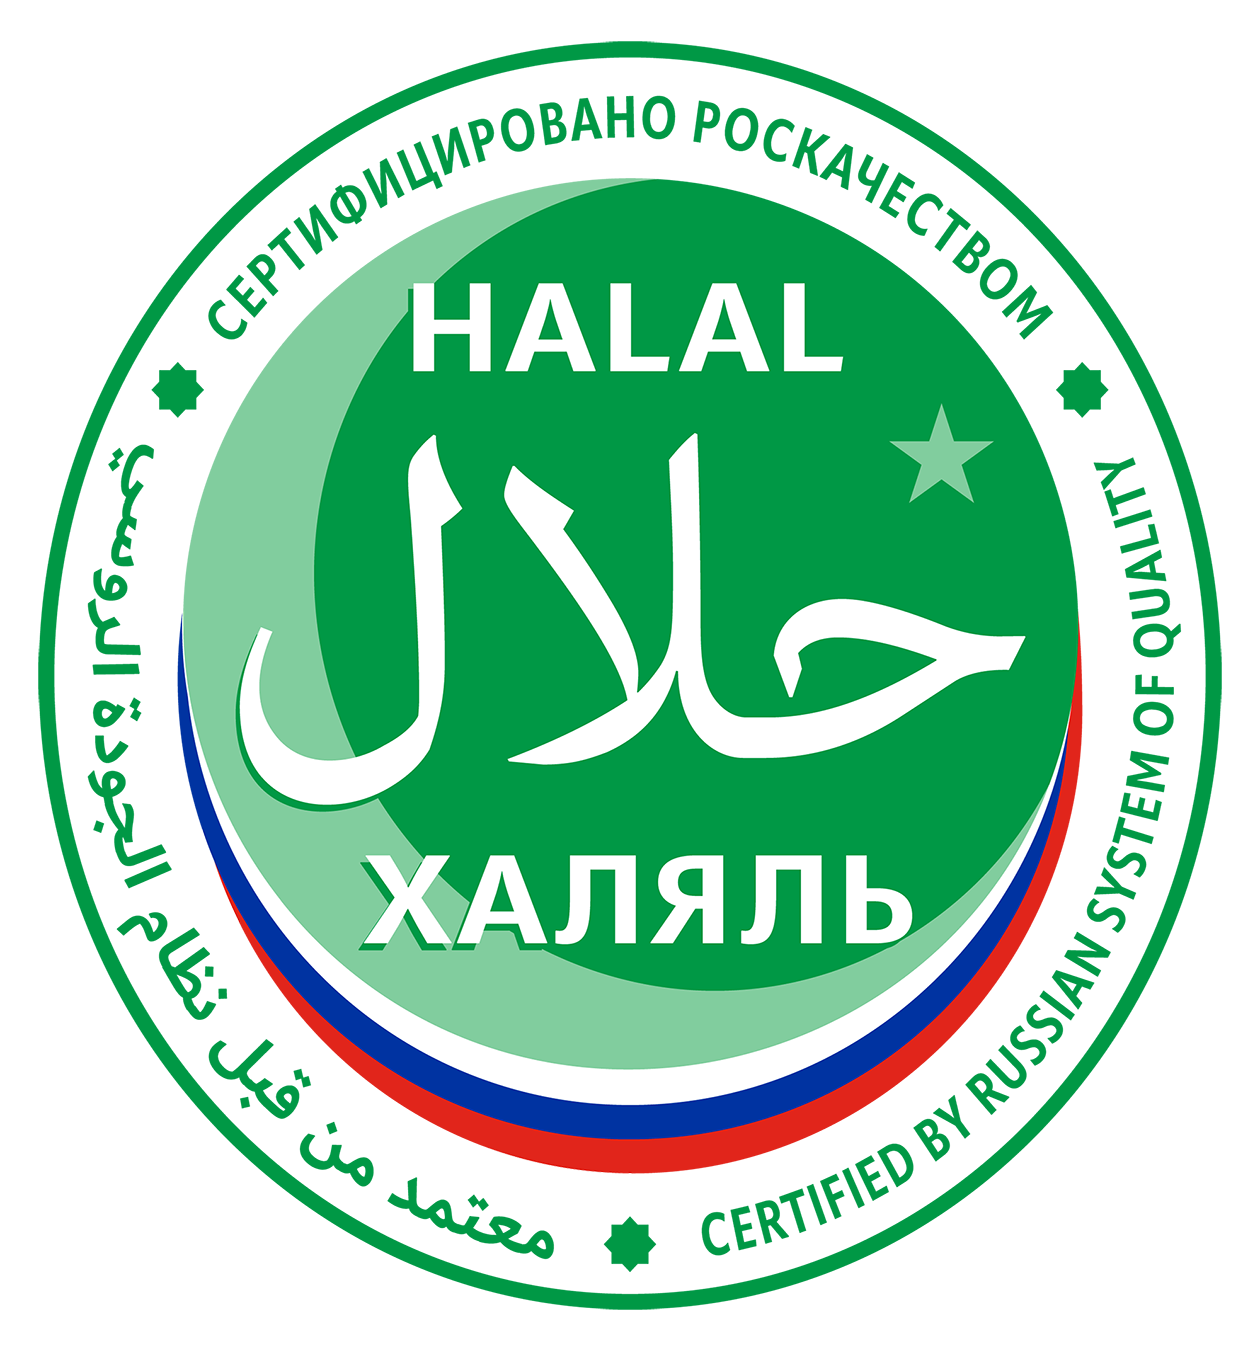 У халяльных продуктов должна быть особая маркировка, а у поставщика — специальный сертификат. Источник: roskachestvo.gov.ru